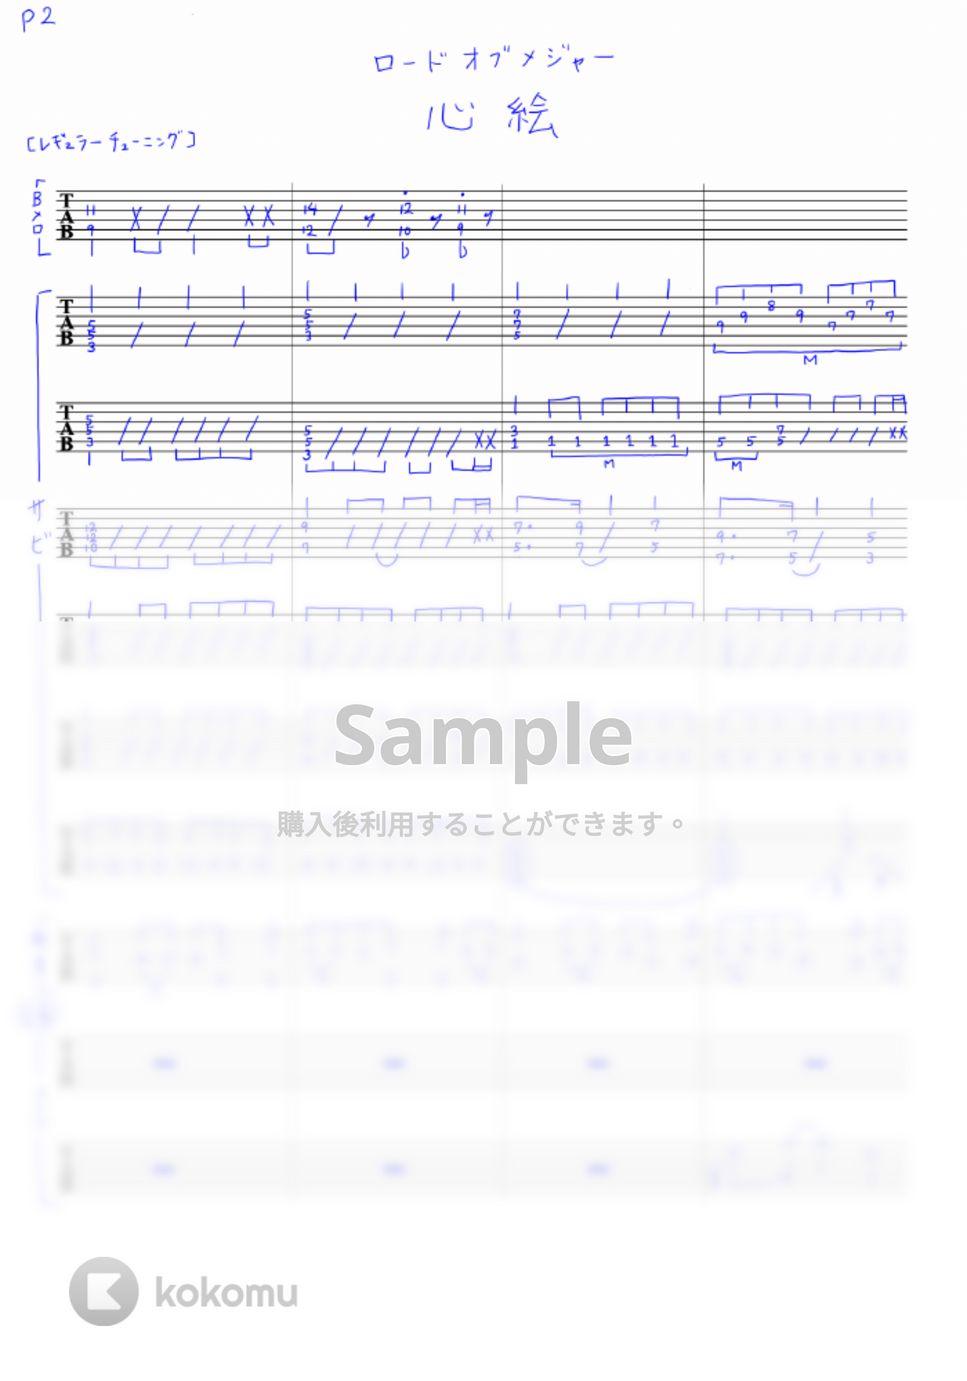 ロードオブメジャー - 心絵 (リードギターTAB譜) by toRio